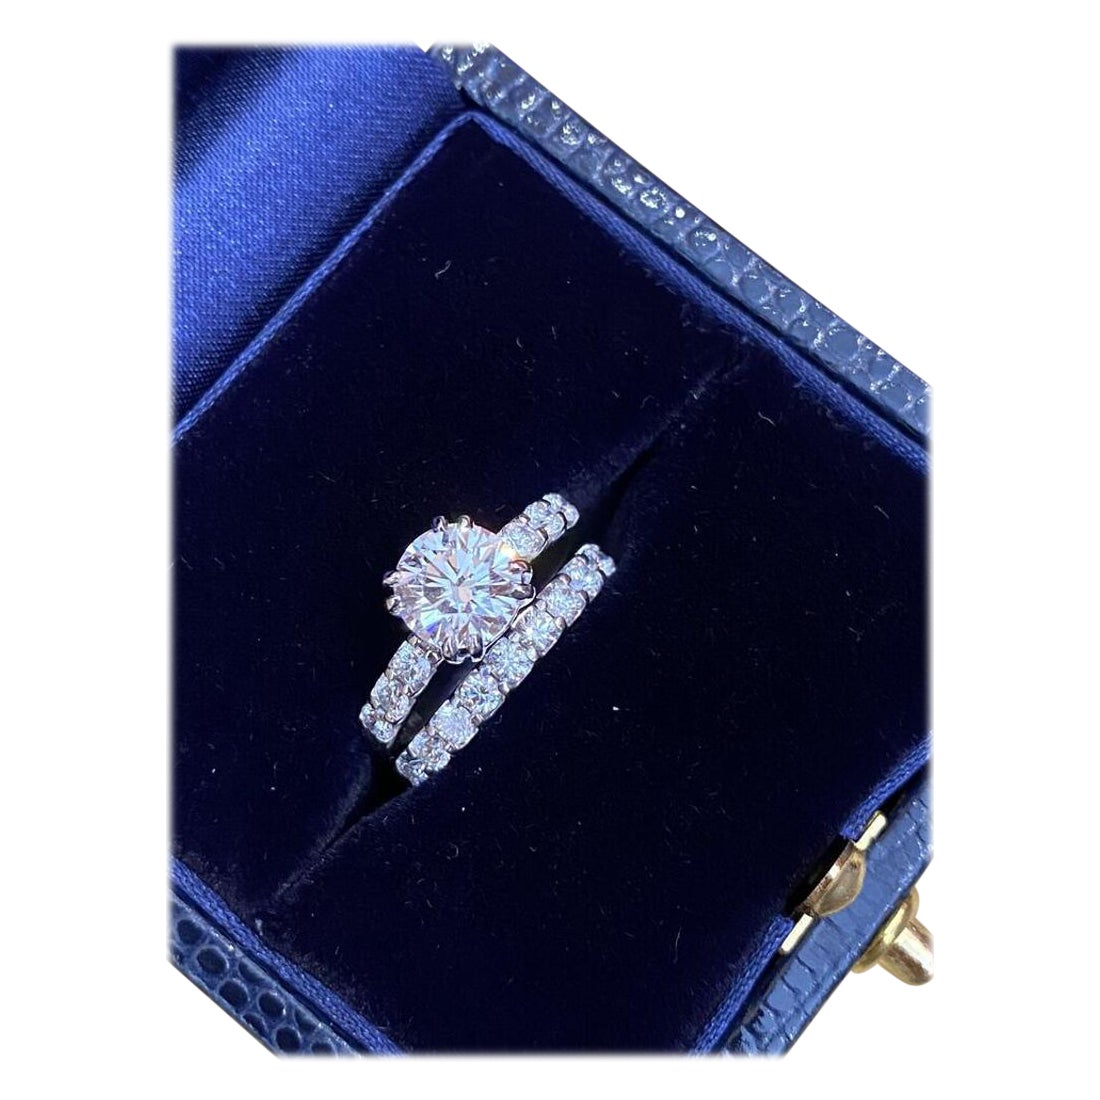 GIA 1.23 Carat Engagement Diamond Ring Set in 14k White Gold